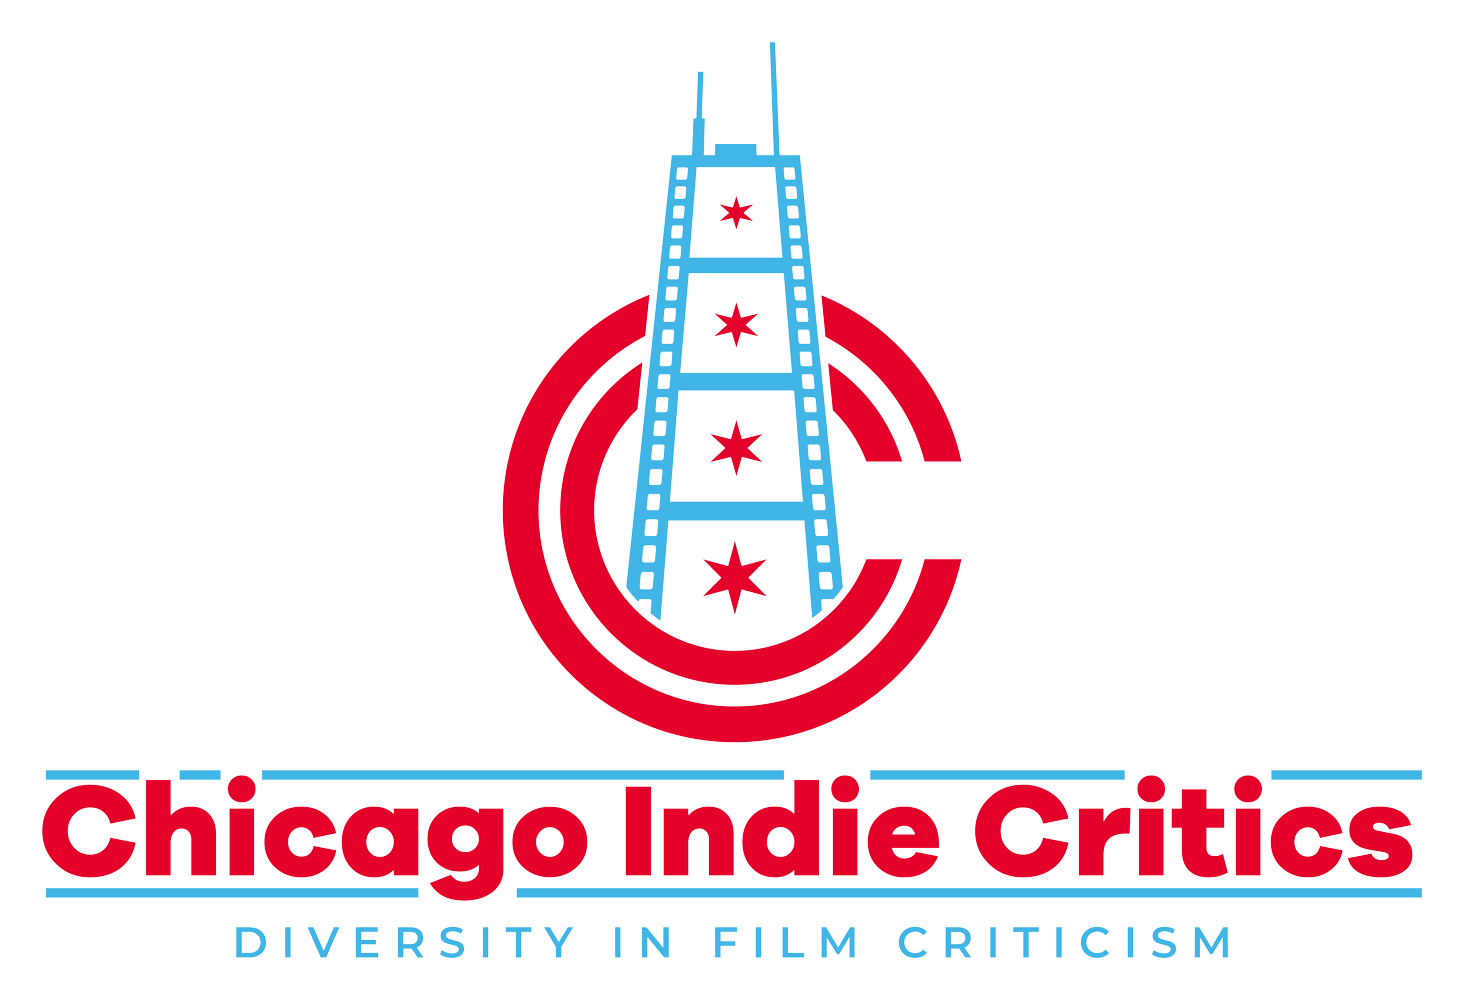 Diversity in Film Criticism